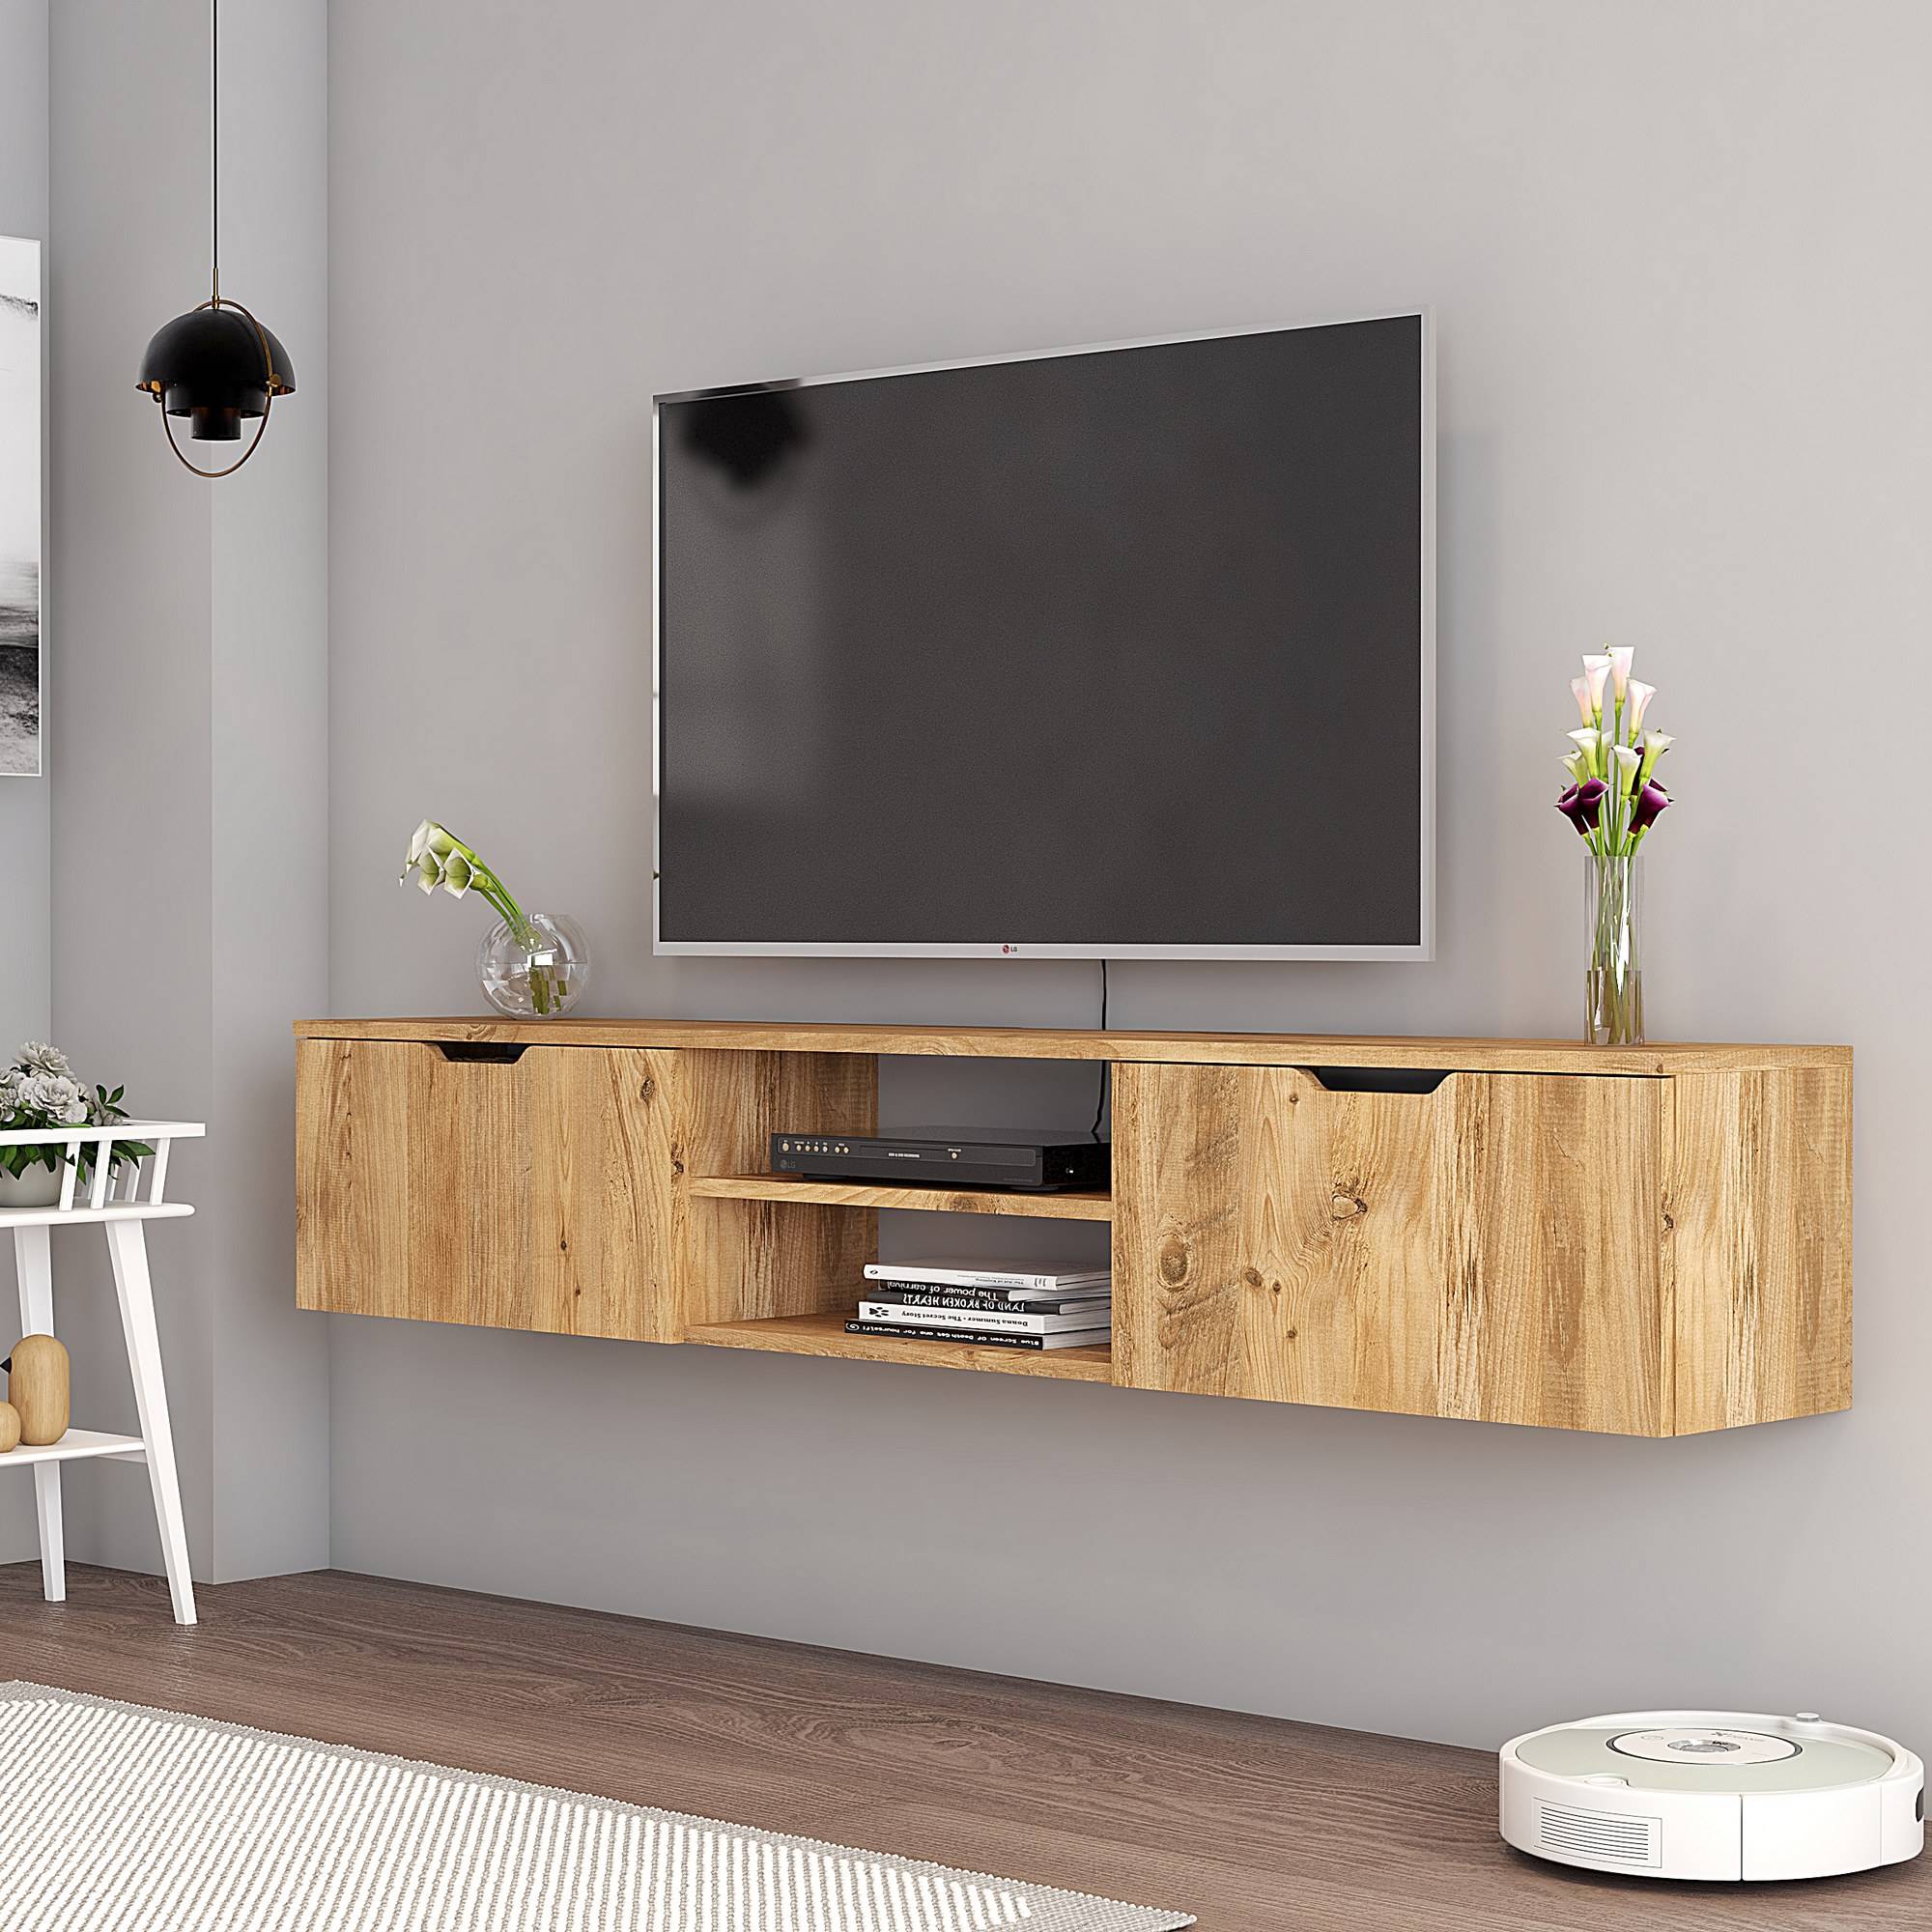 Porta TV a parete - Supporto della televisione - Mobili